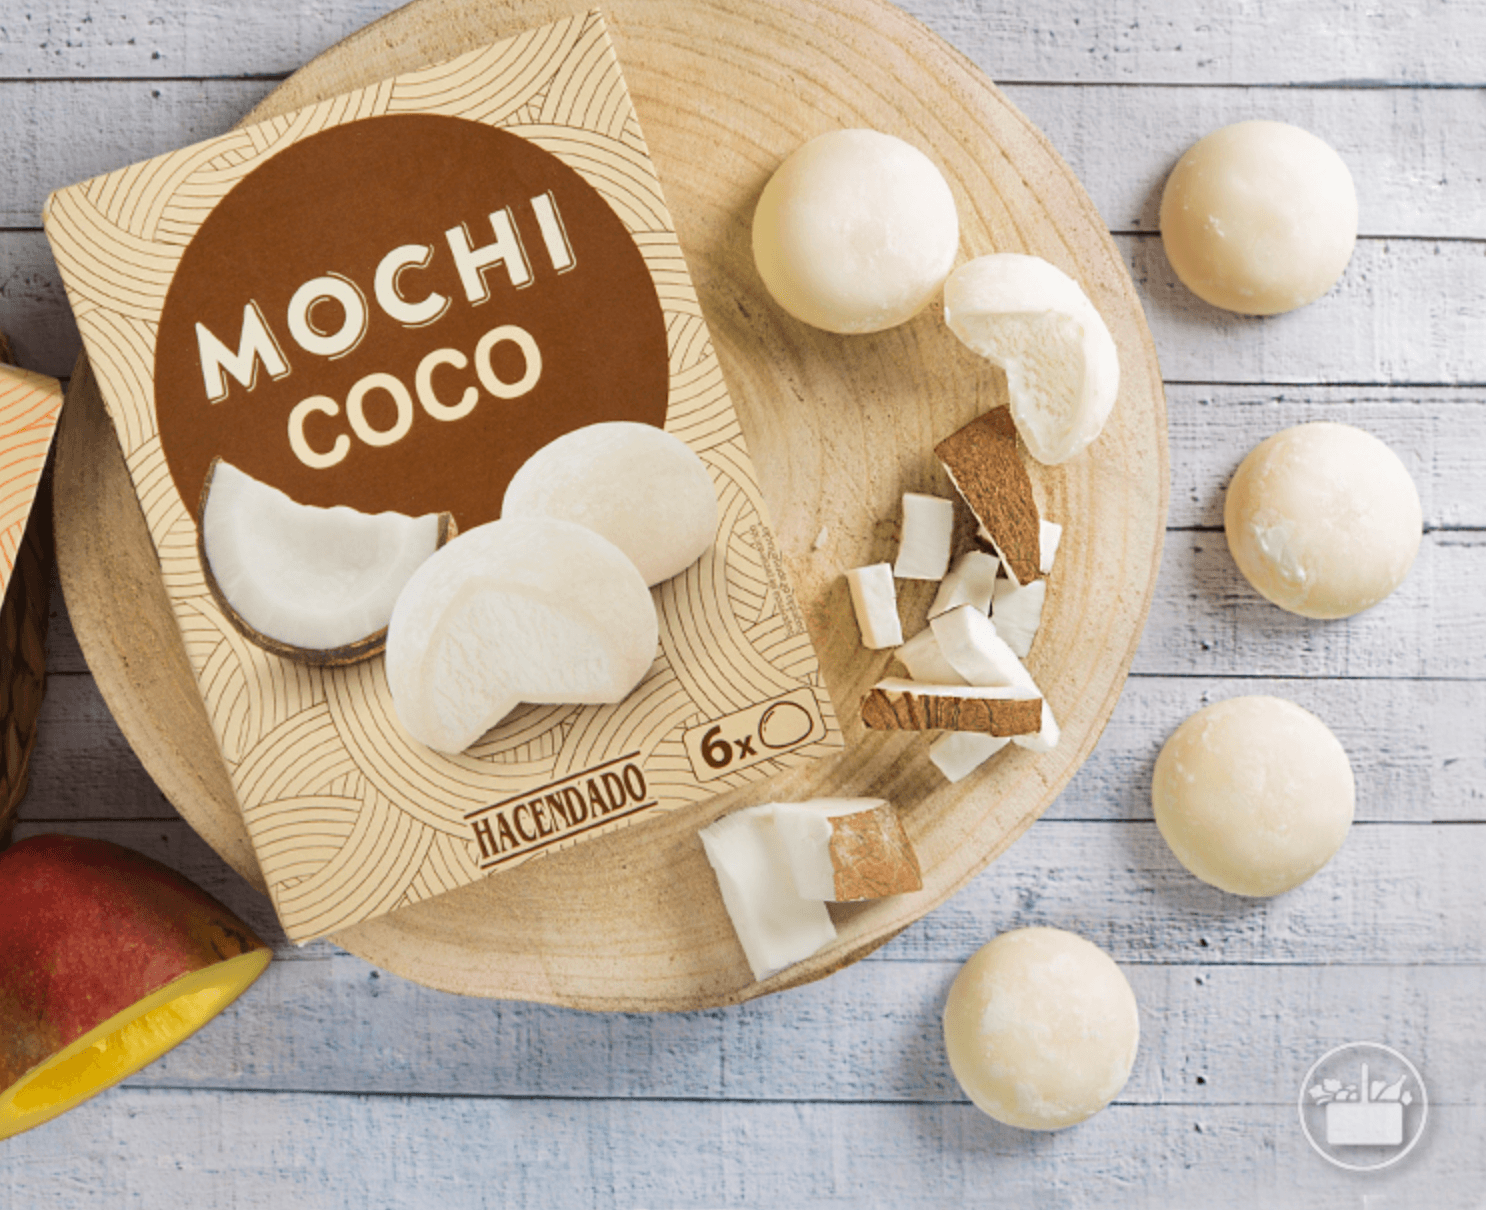 Un helado japonés de 2 € de Mercadona está provocando una locura entre sus clientes - Mochi Coco Hacendado